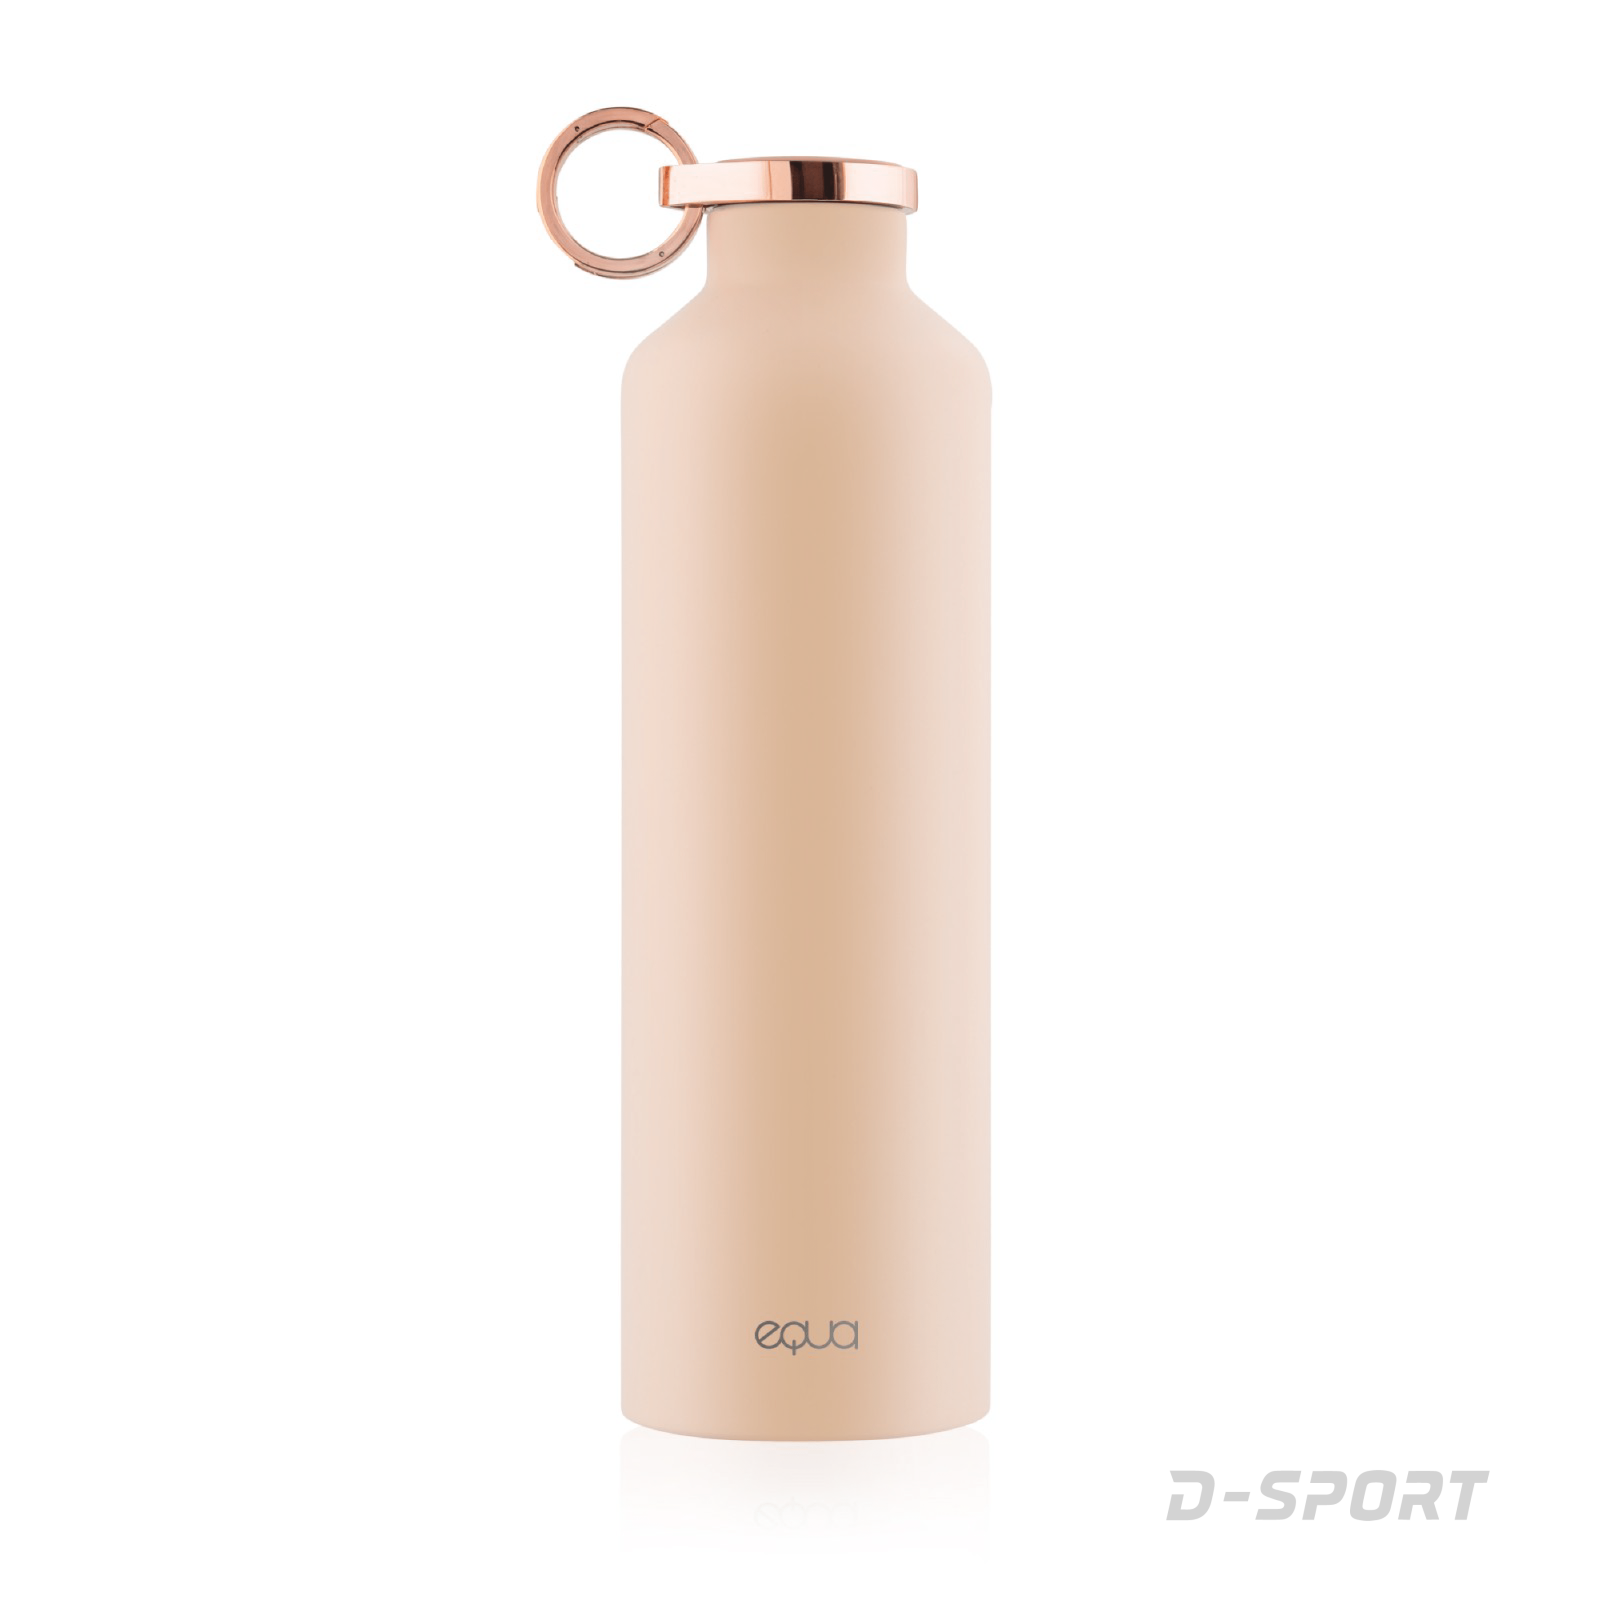 Equa Smart – Smart bottle, 680ml